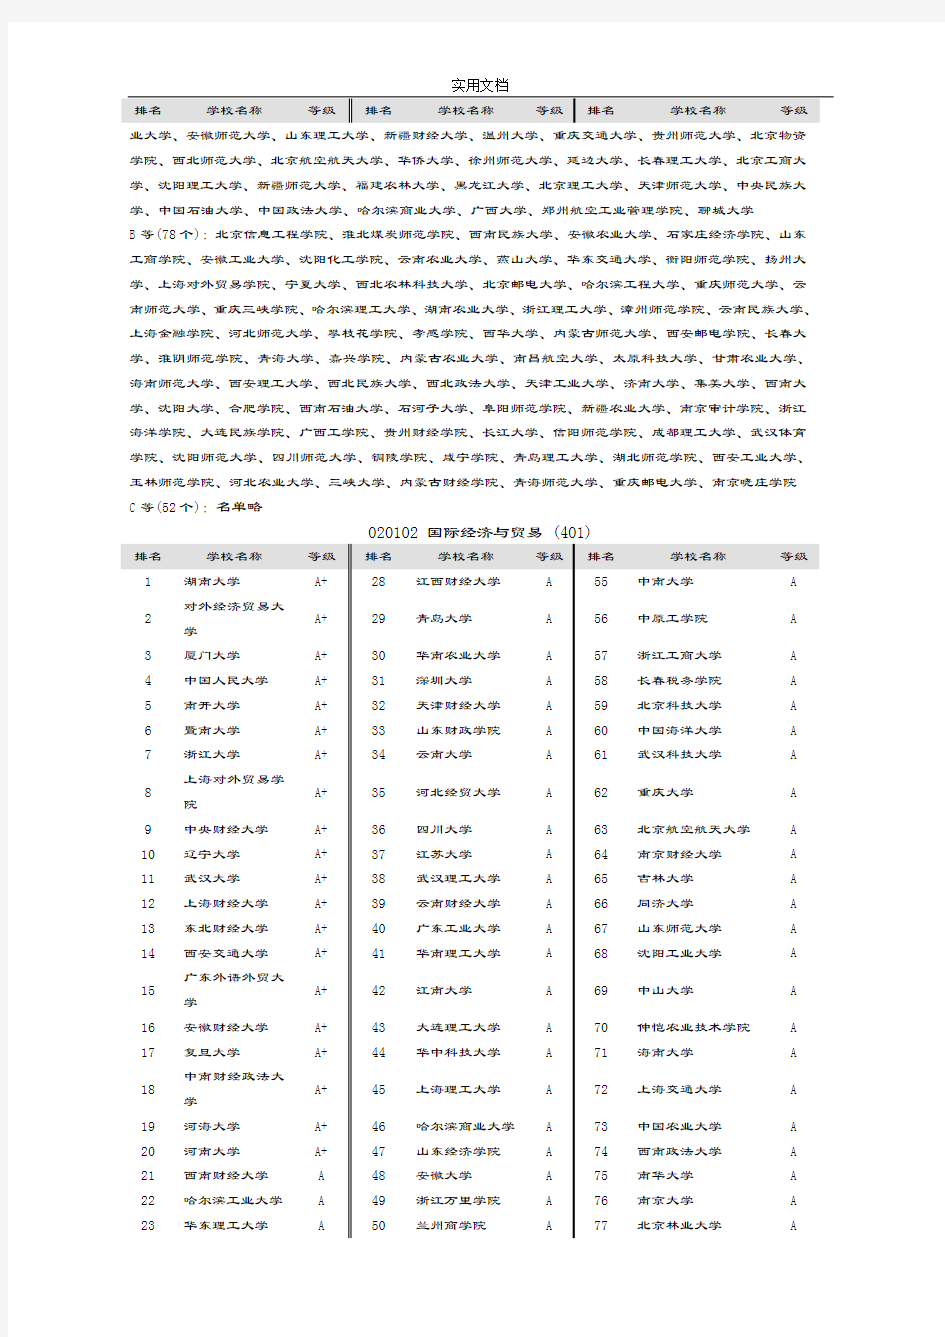 中国大学专业排名(新颖版)